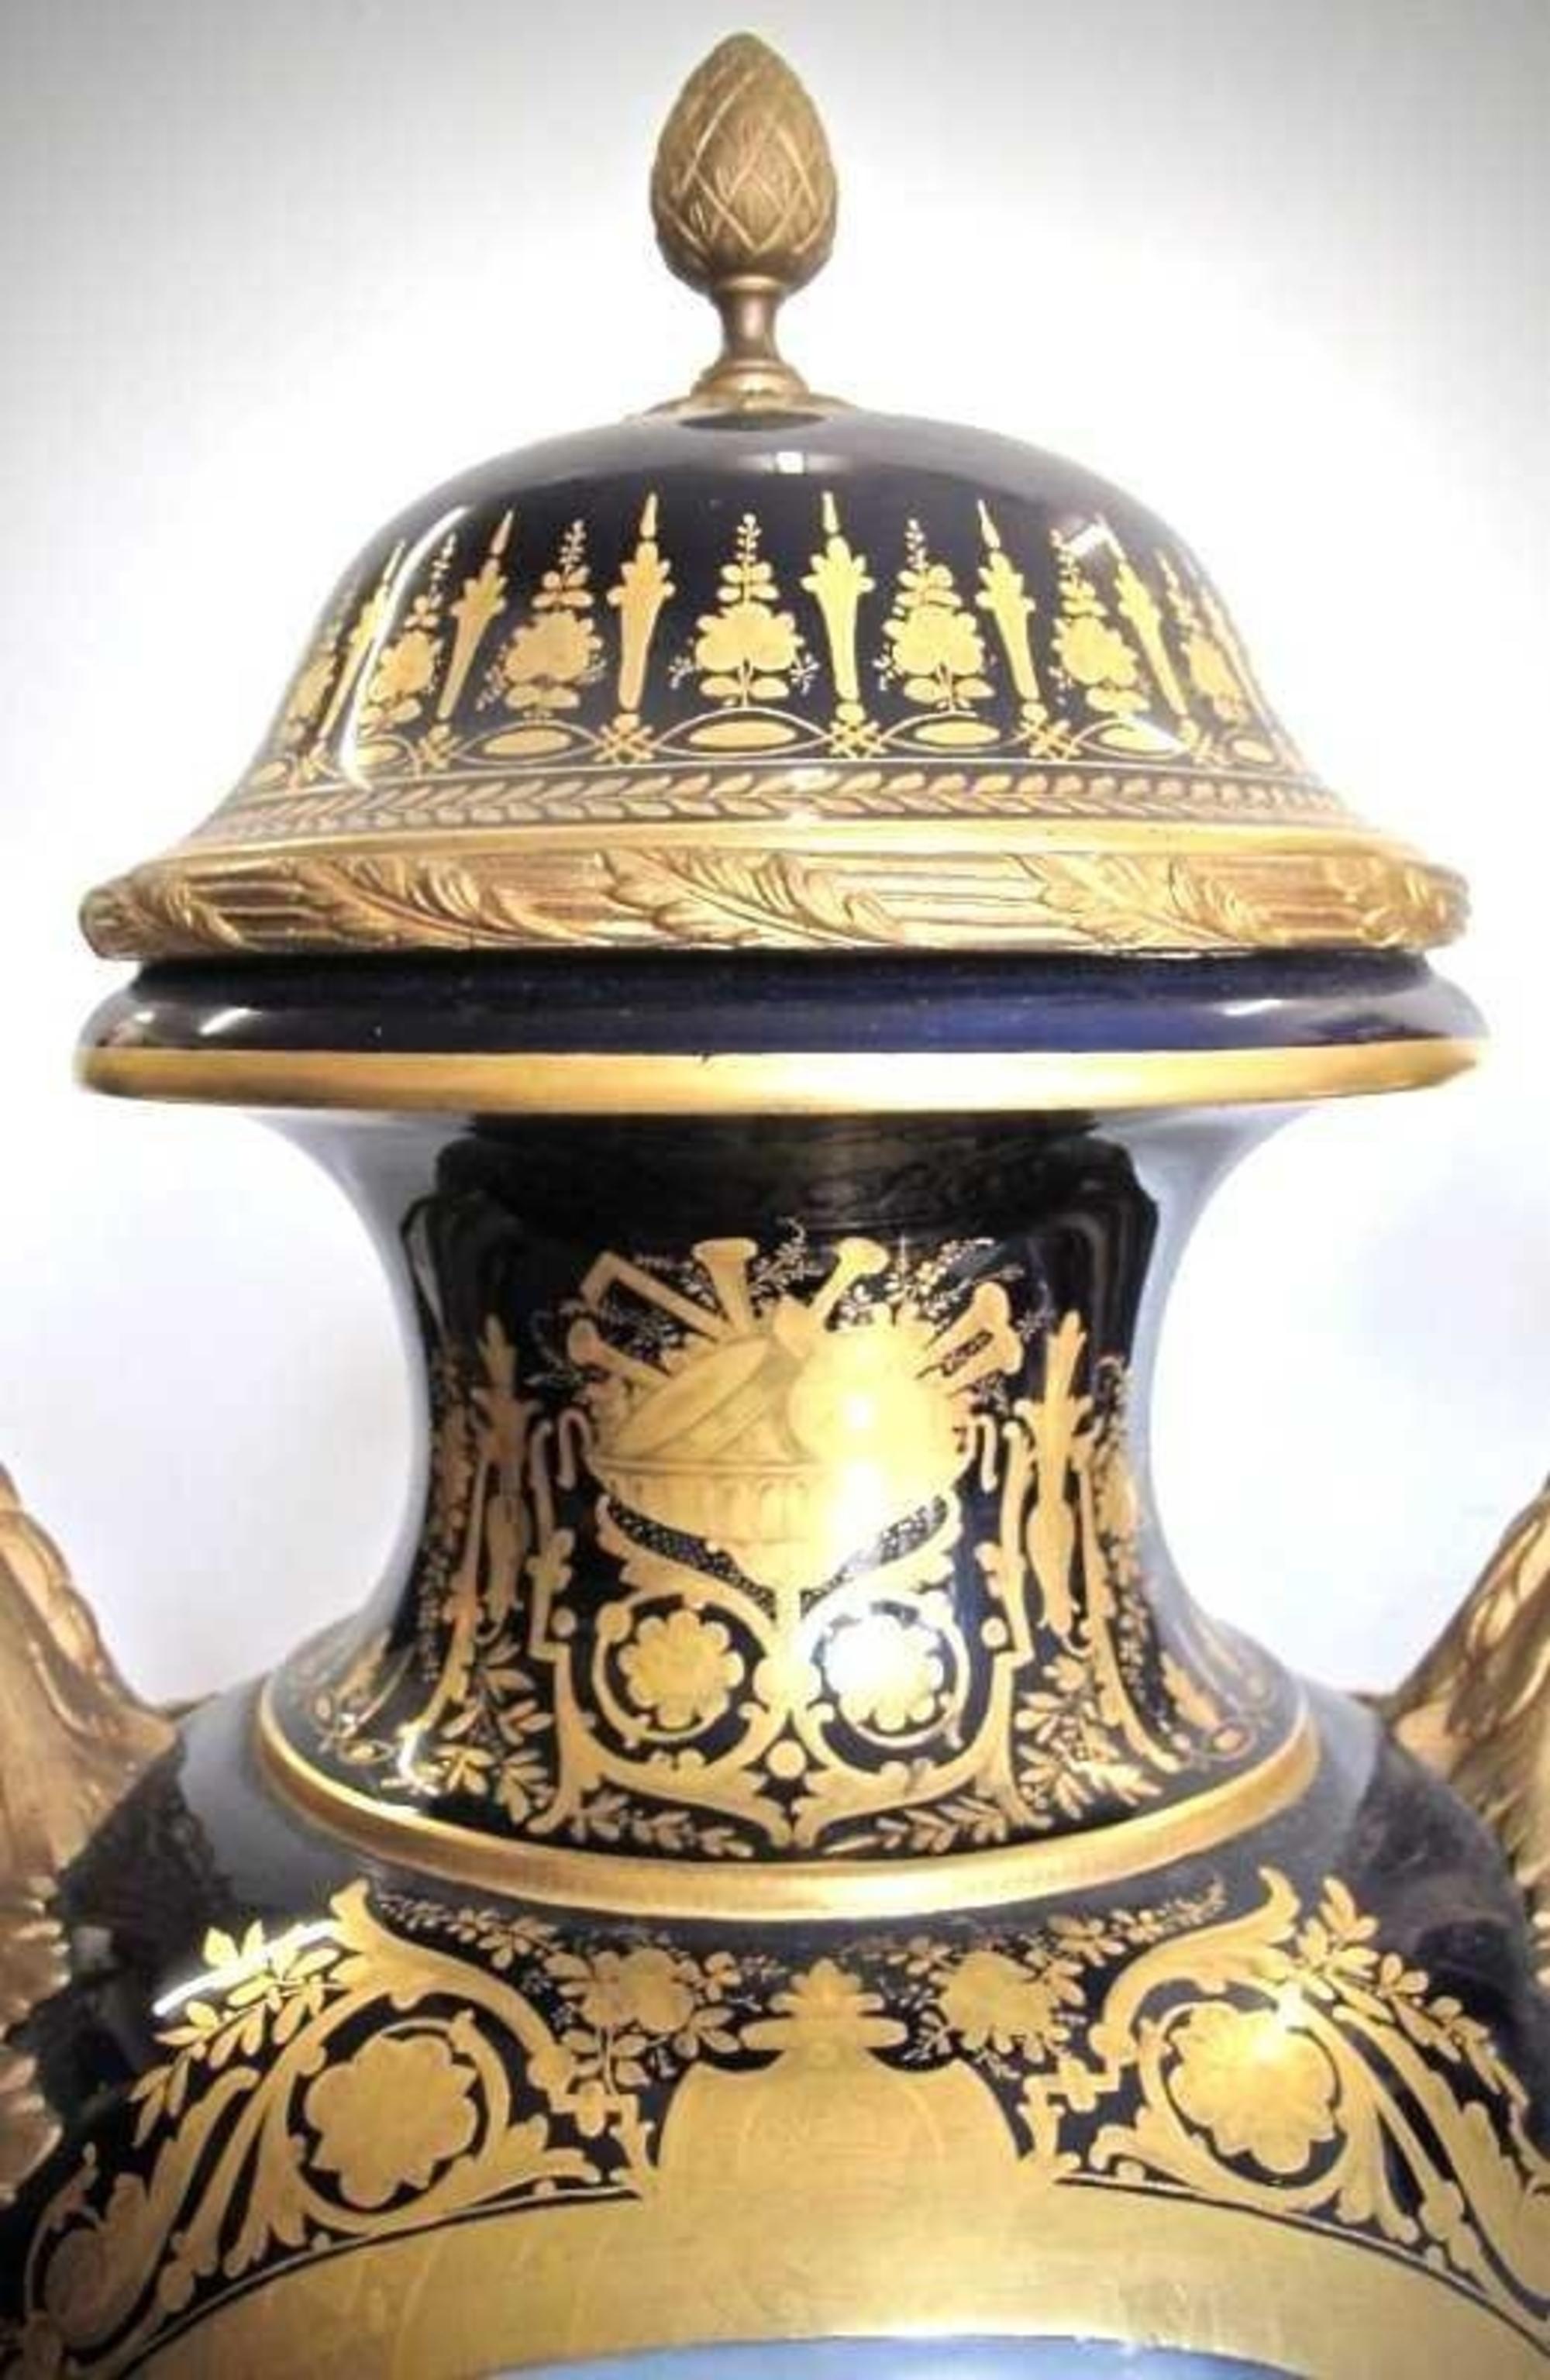 Ein großes und prächtiges Paar aus dem 19
Vasen und Deckel aus Goldbronze im Sevres-Stil.
Maße: Höhe 95 cm.
Der blaue, urnenförmige Korpus ist mit einem balzenden Paar bemalt, signiert E. Pierem,
mit einer Seeszene auf der Rückseite, das andere